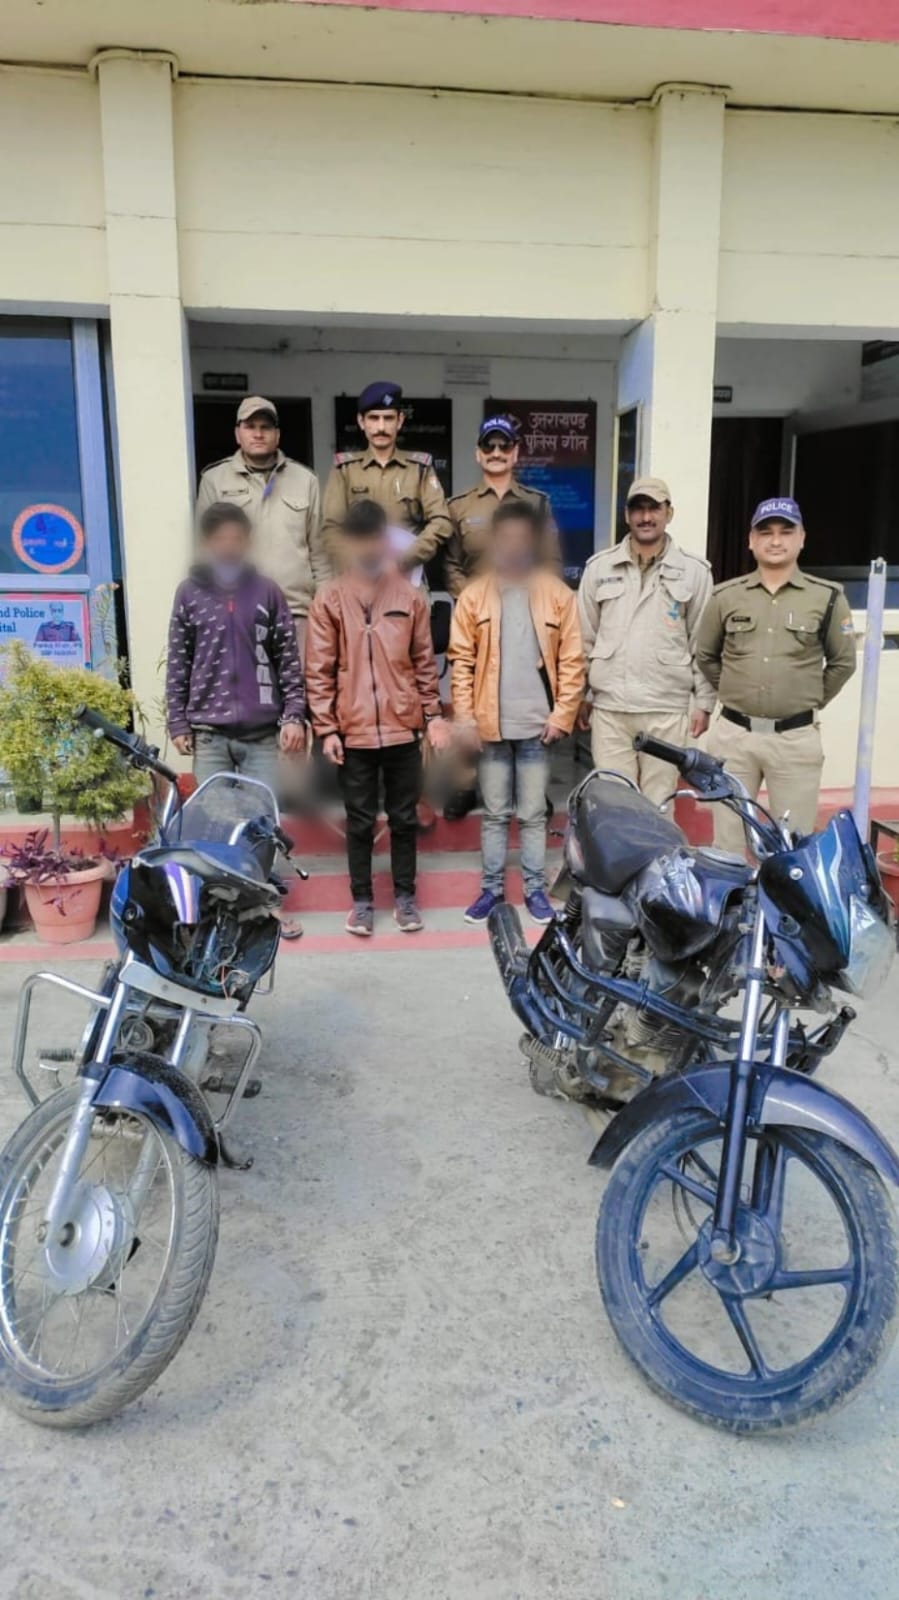 अंतर्जनपदीय वाहन चोर गिरोह के तीन सदस्यों को गिरफ्तार कर भीमताल पुलिस ने बरामद की दो बाइक